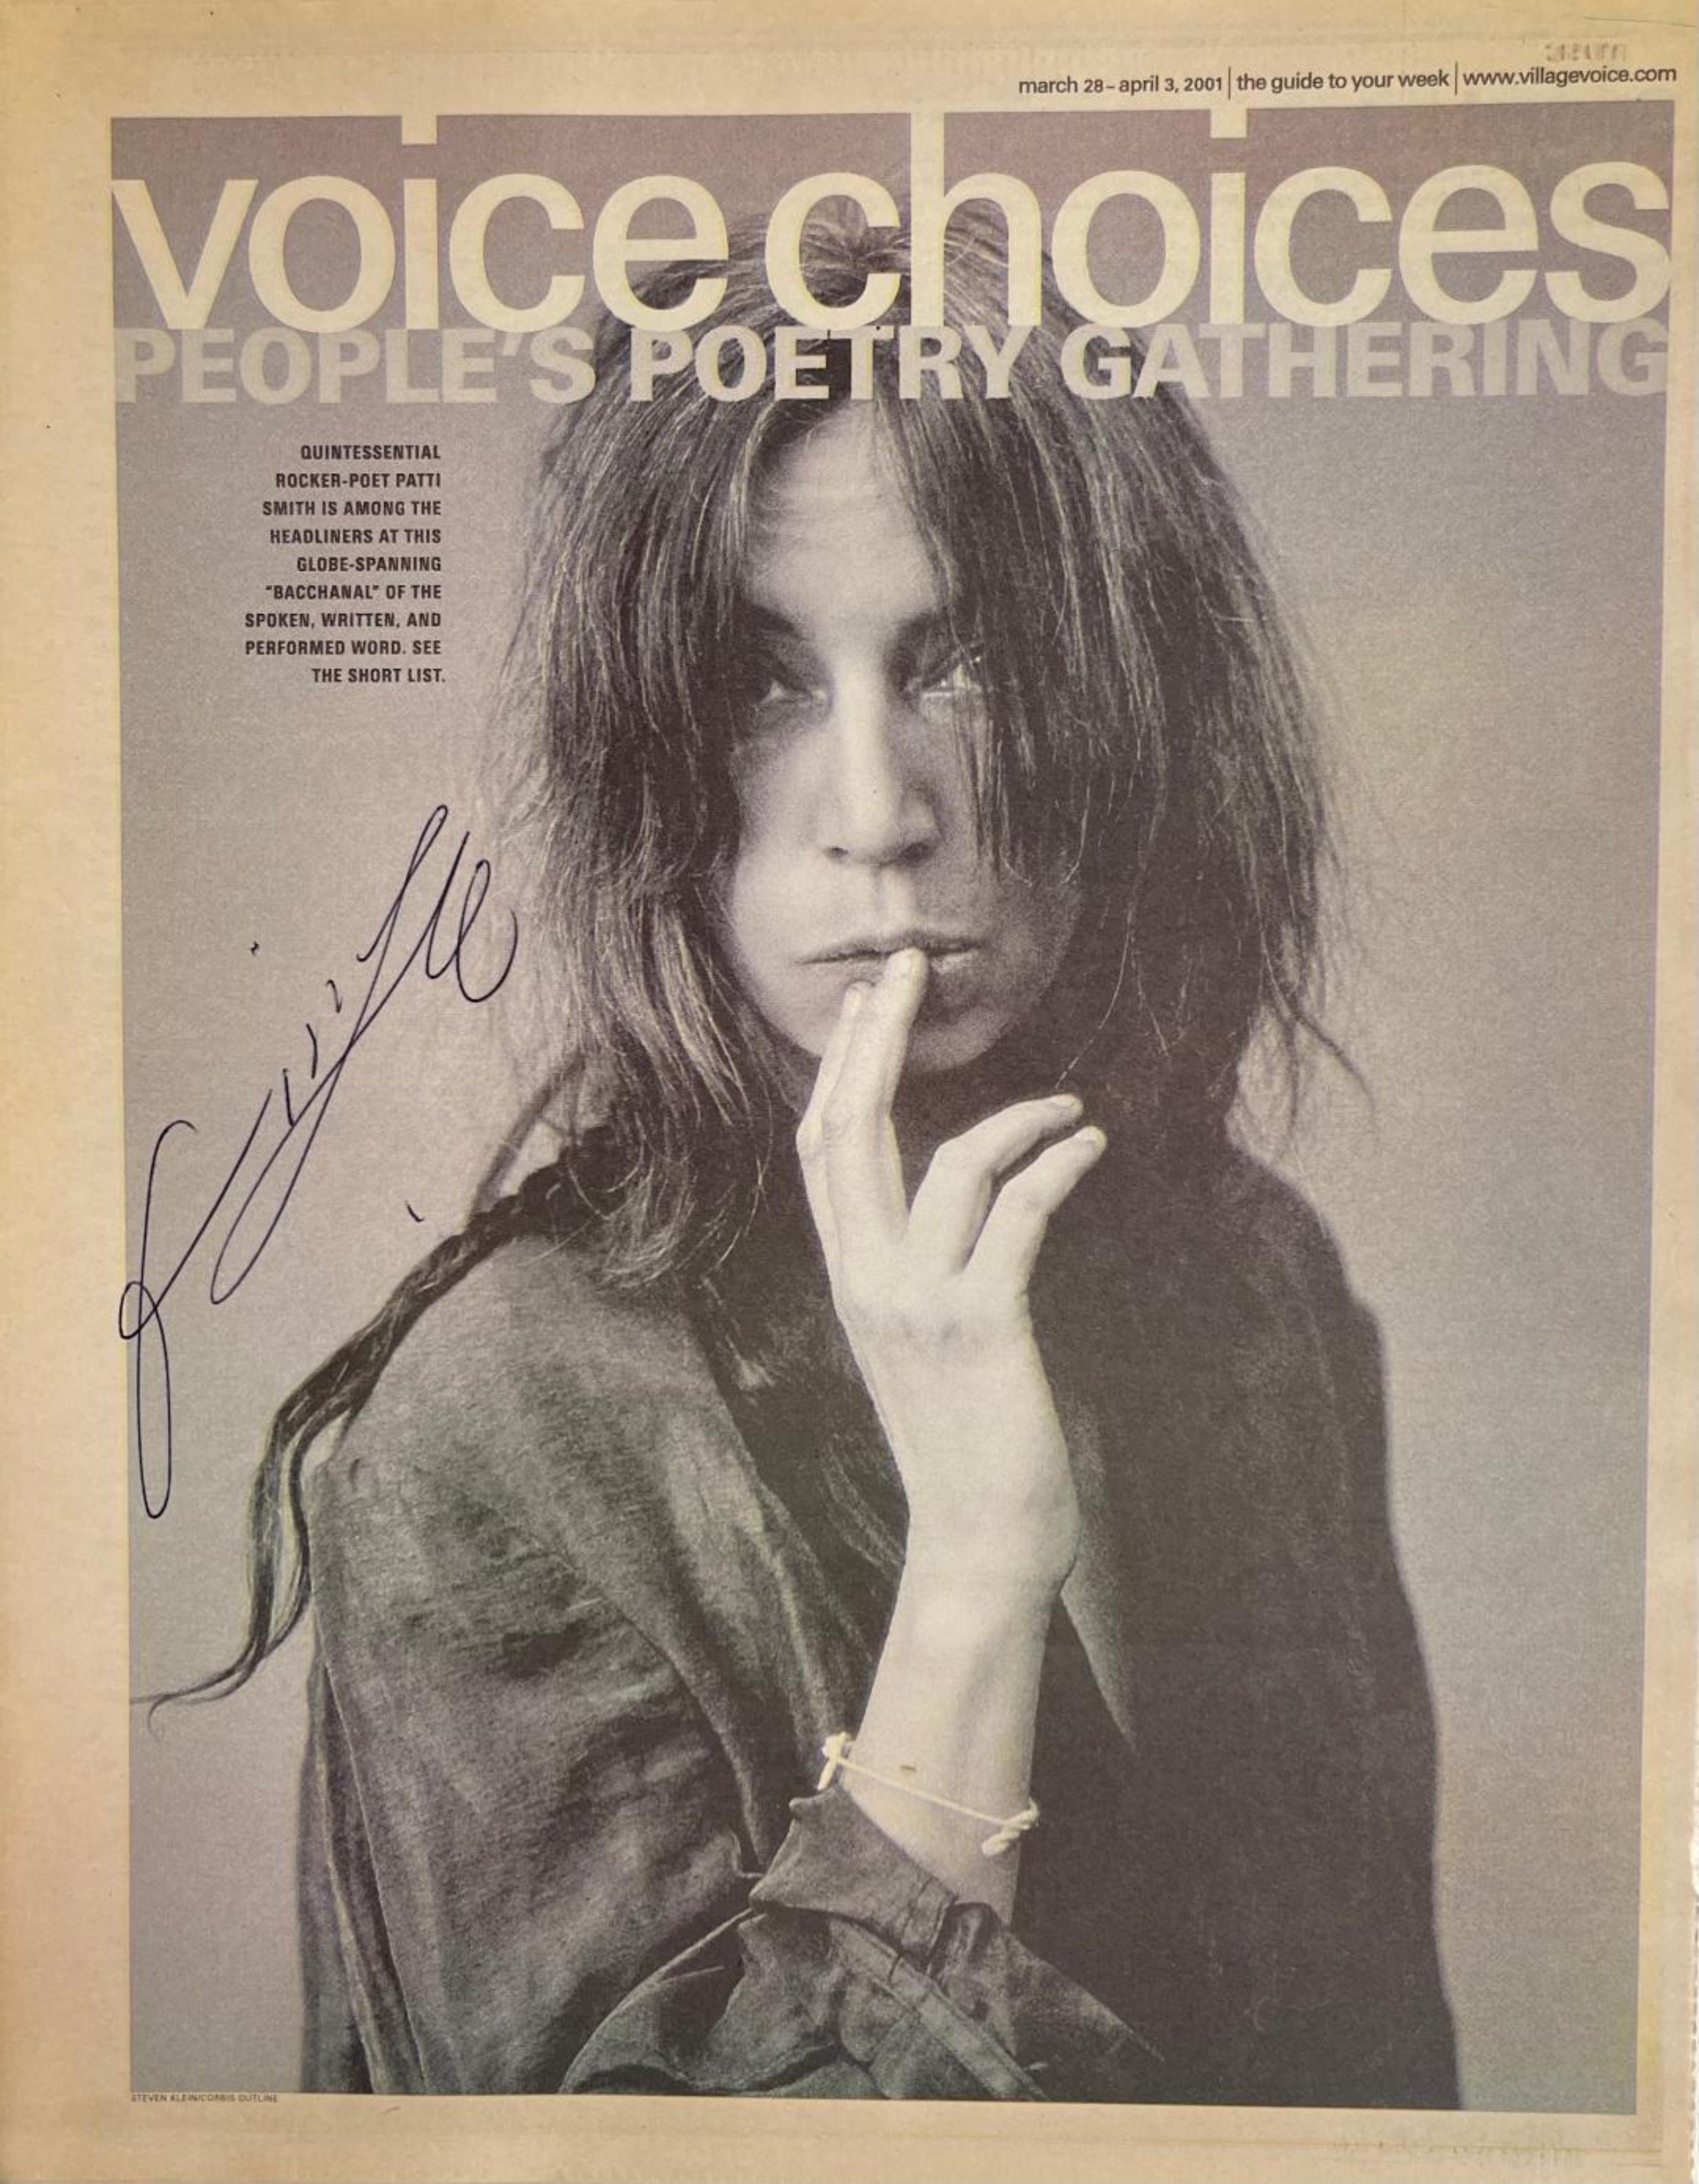 Insert du journal Village Voice (Voice Choices) signé à la main par Patti Smith